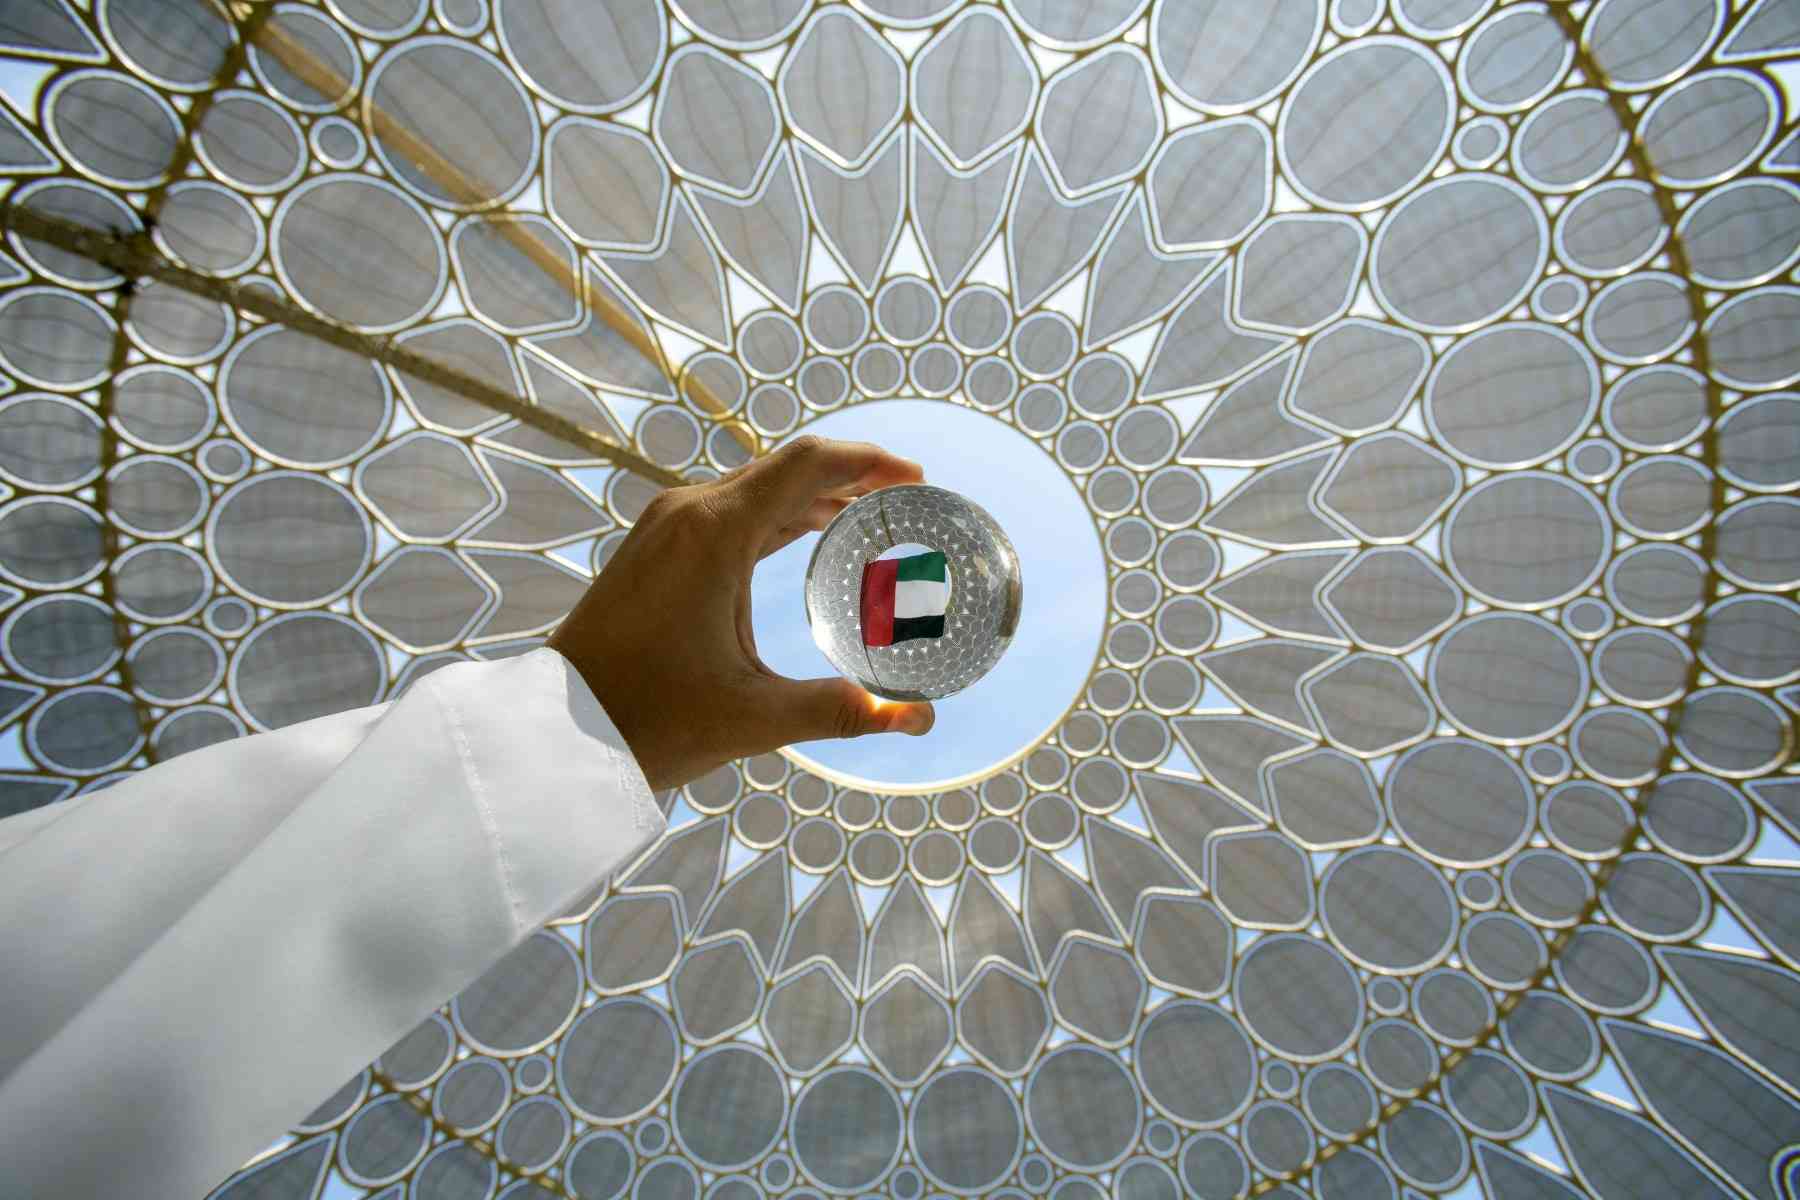 اللجنة العليا لإكسبو: الإمارات أثبتت قدرتها على جمع العالم بنجاح وأمان وسلامة